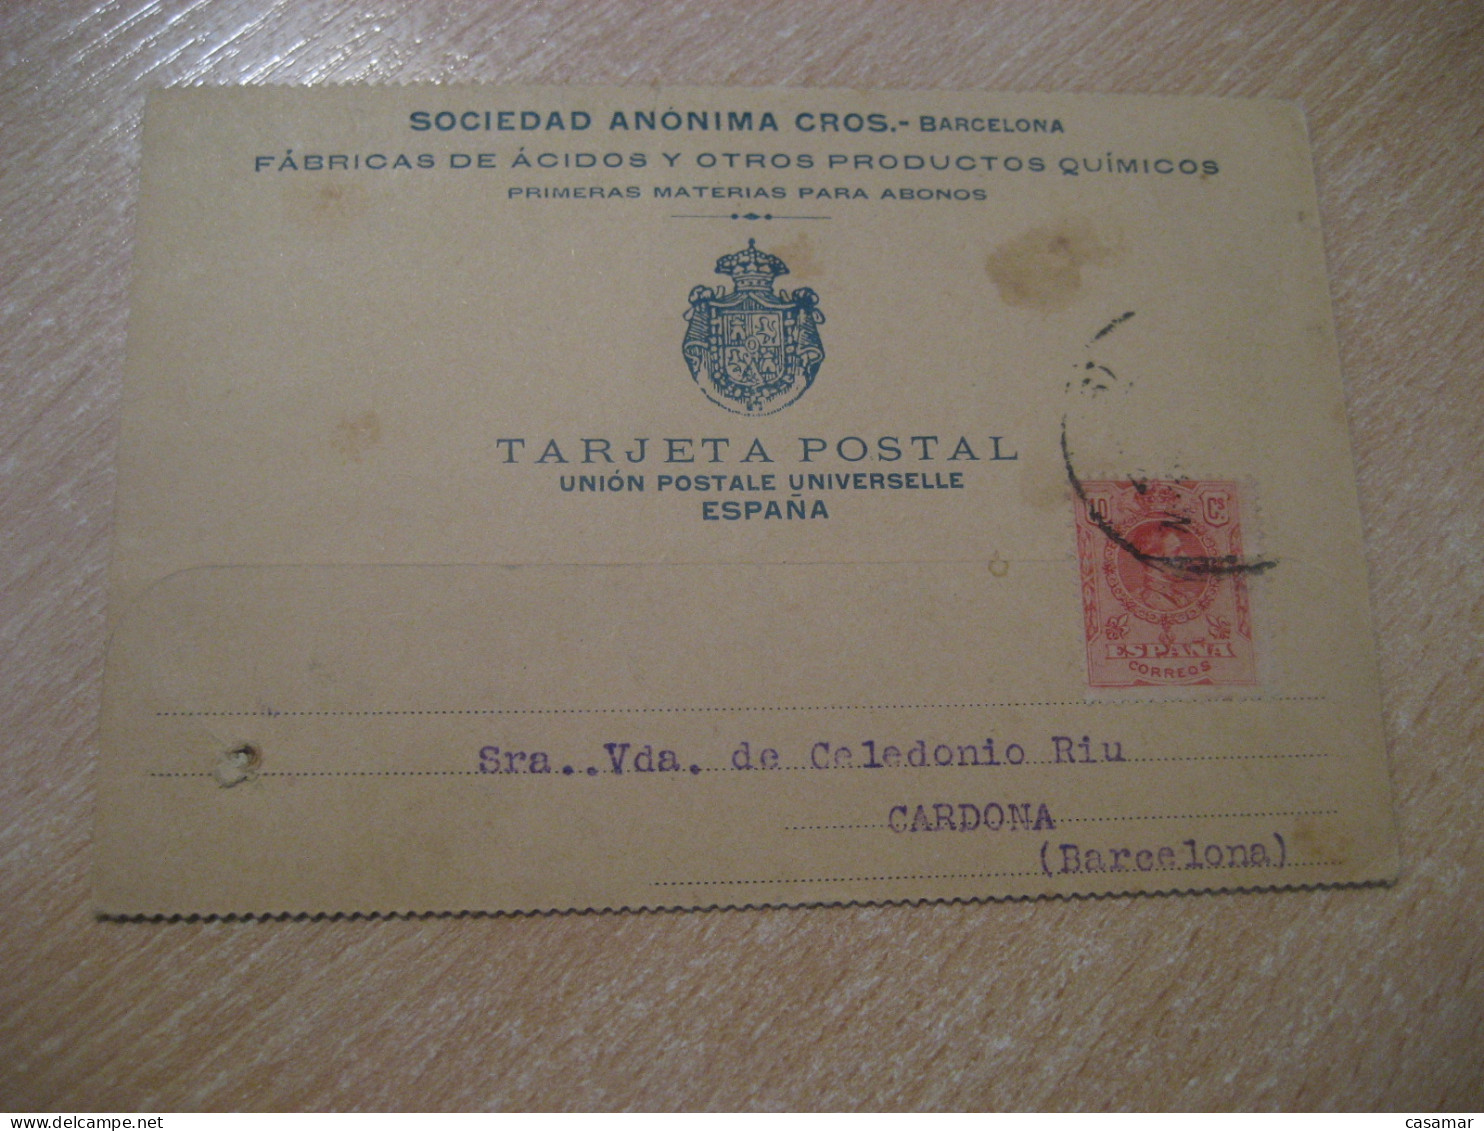 BARCELONA 1912 To Cardona CROS Chemical Chemistry Cancel Card SPAIN - Covers & Documents